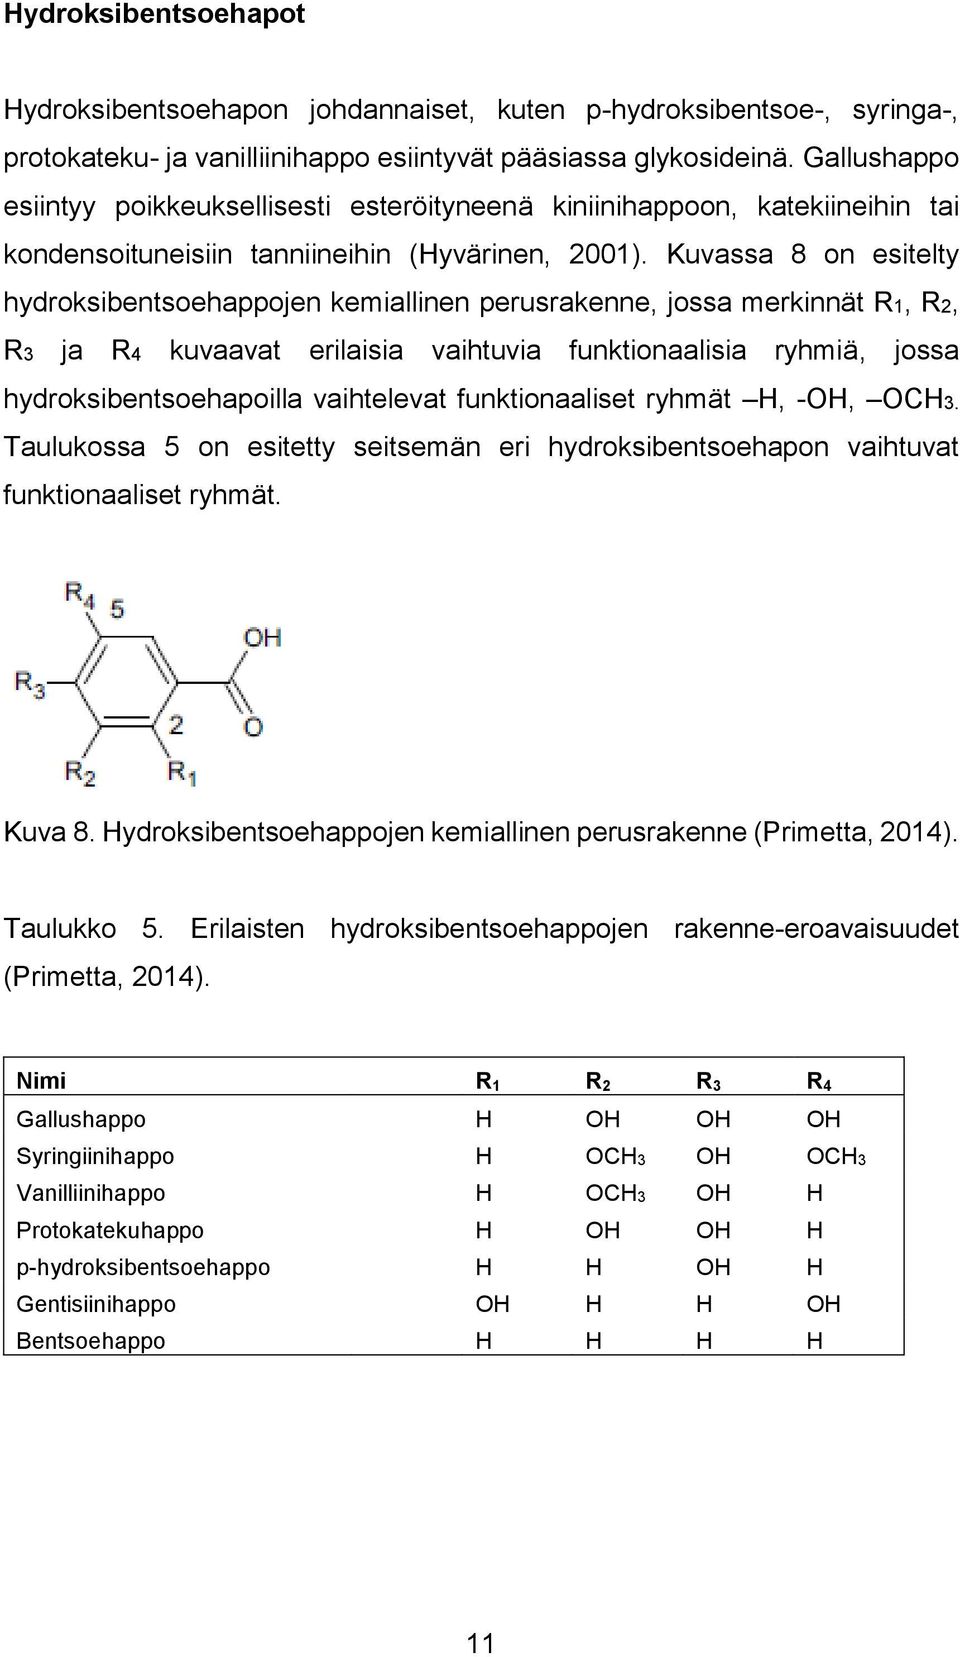 Kuvassa 8 on esitelty hydroksibentsoehappojen kemiallinen perusrakenne, jossa merkinnät R1, R2, R3 ja R4 kuvaavat erilaisia vaihtuvia funktionaalisia ryhmiä, jossa hydroksibentsoehapoilla vaihtelevat